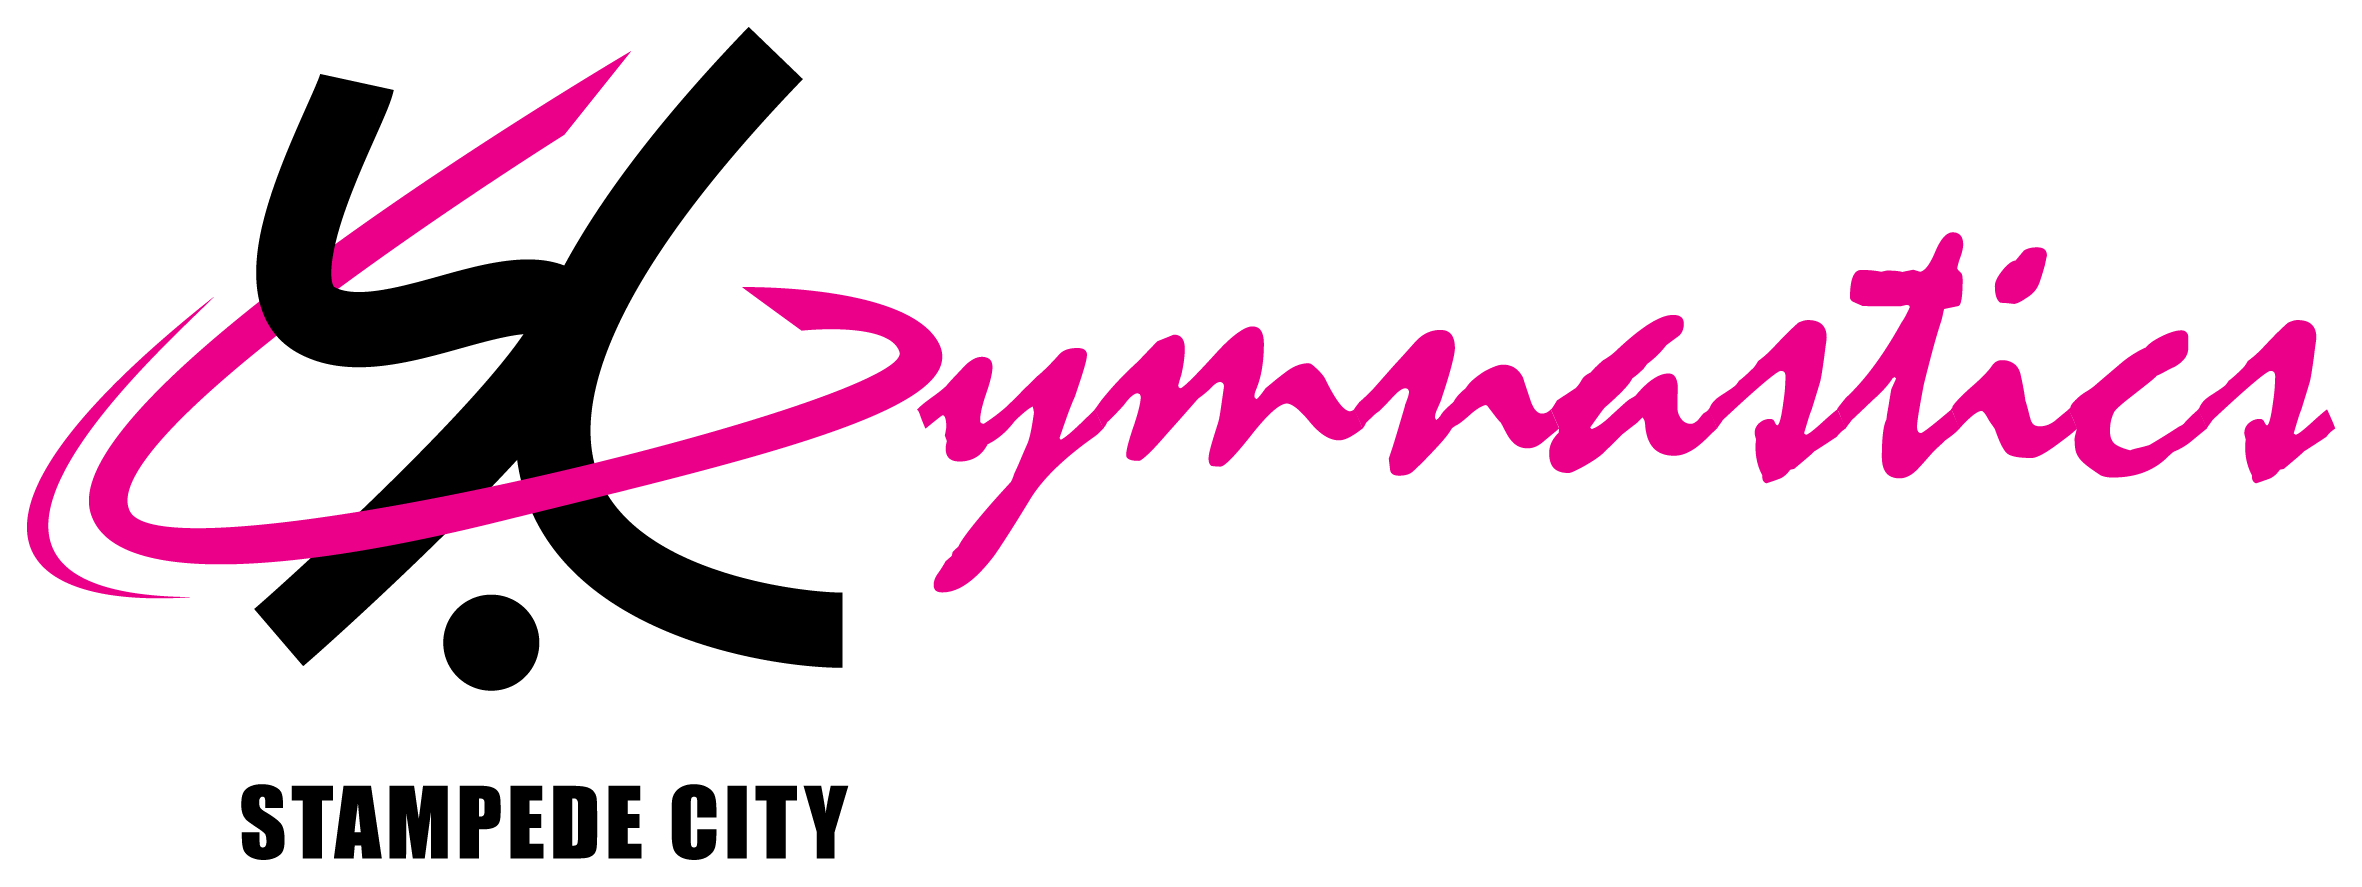 Welcome To Stampede City Gymnastics - Stampede City Gymnastics Logo (2362x887)